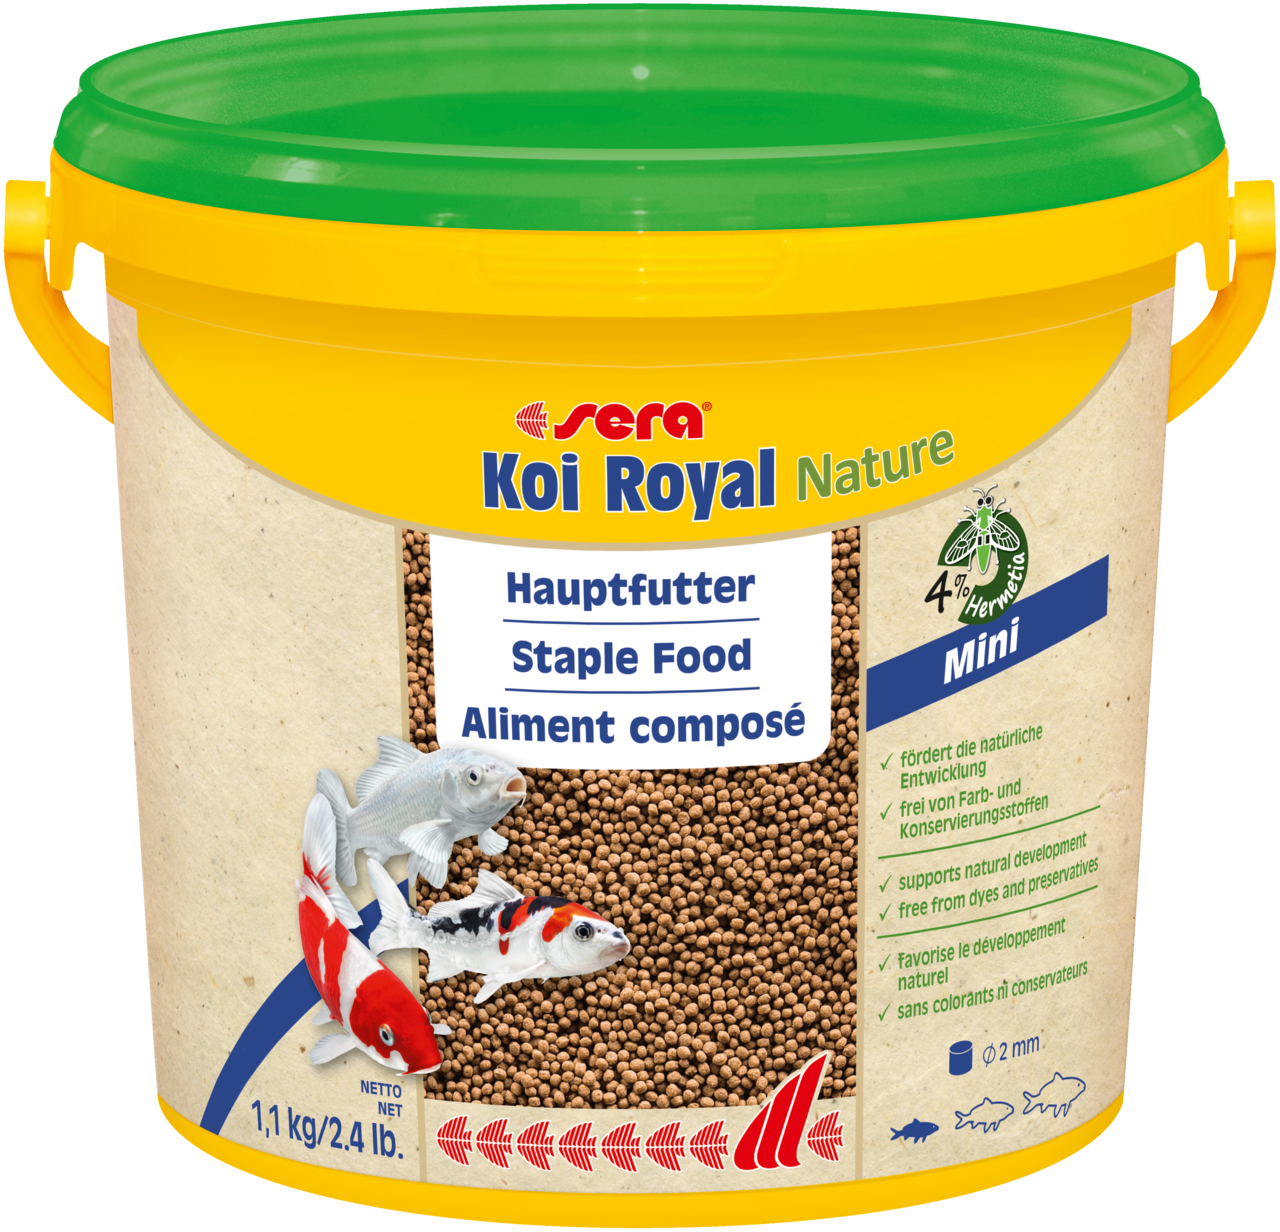 sera Koi Royal Nature Mini (2 mm) ist das Hauptfutter aus schonend hergestelltem Granulat ohne Farb- und Konservierungsstoffe.